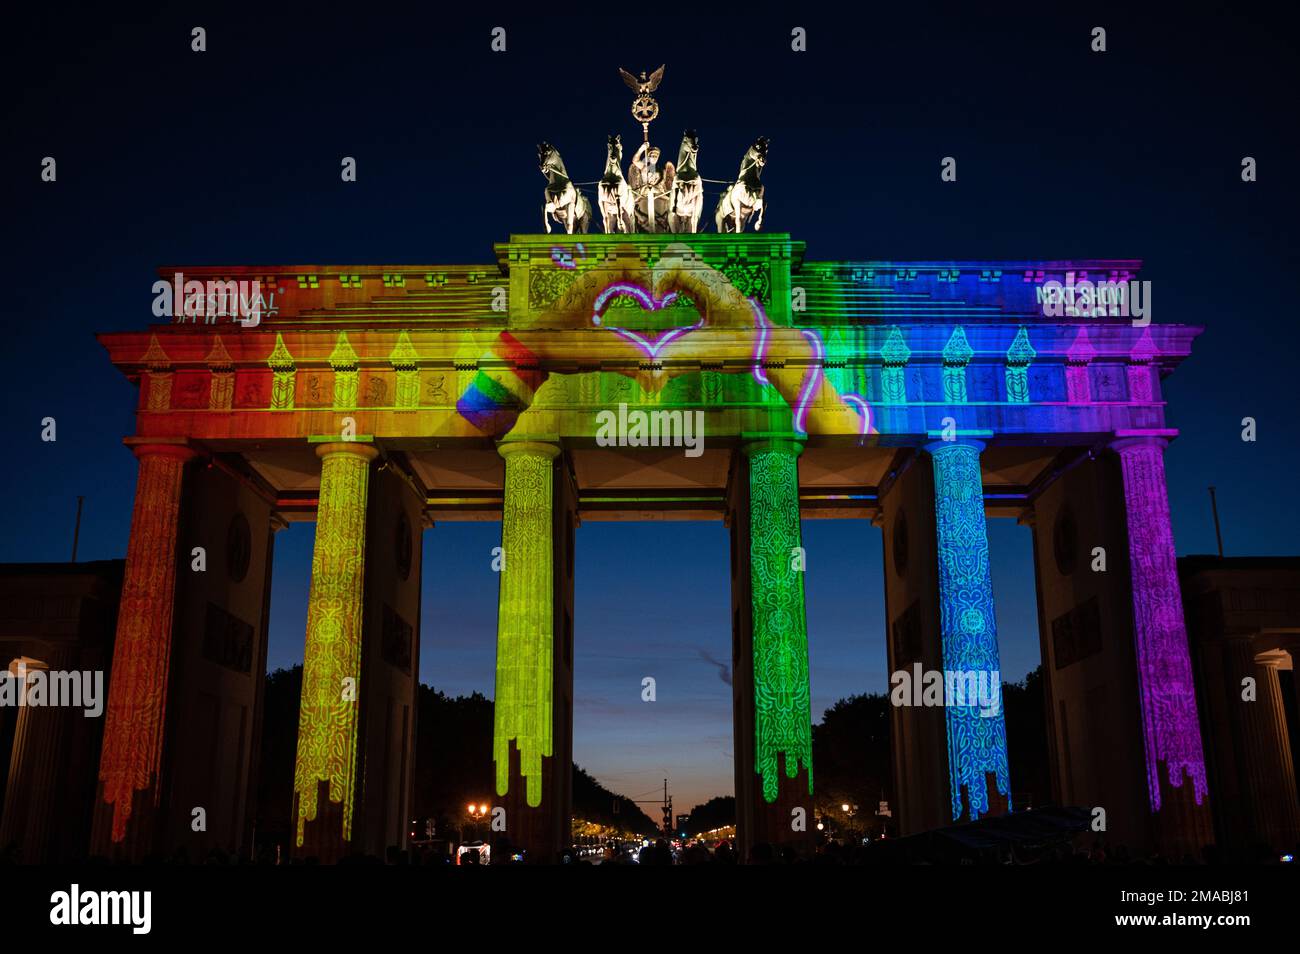 09.10.2022, Germania, , Berlino - la porta di Brandeburgo illuminata nel quartiere di Mitte brilla di colori luminosi durante il Festival delle luci del 18th, Whi Foto Stock